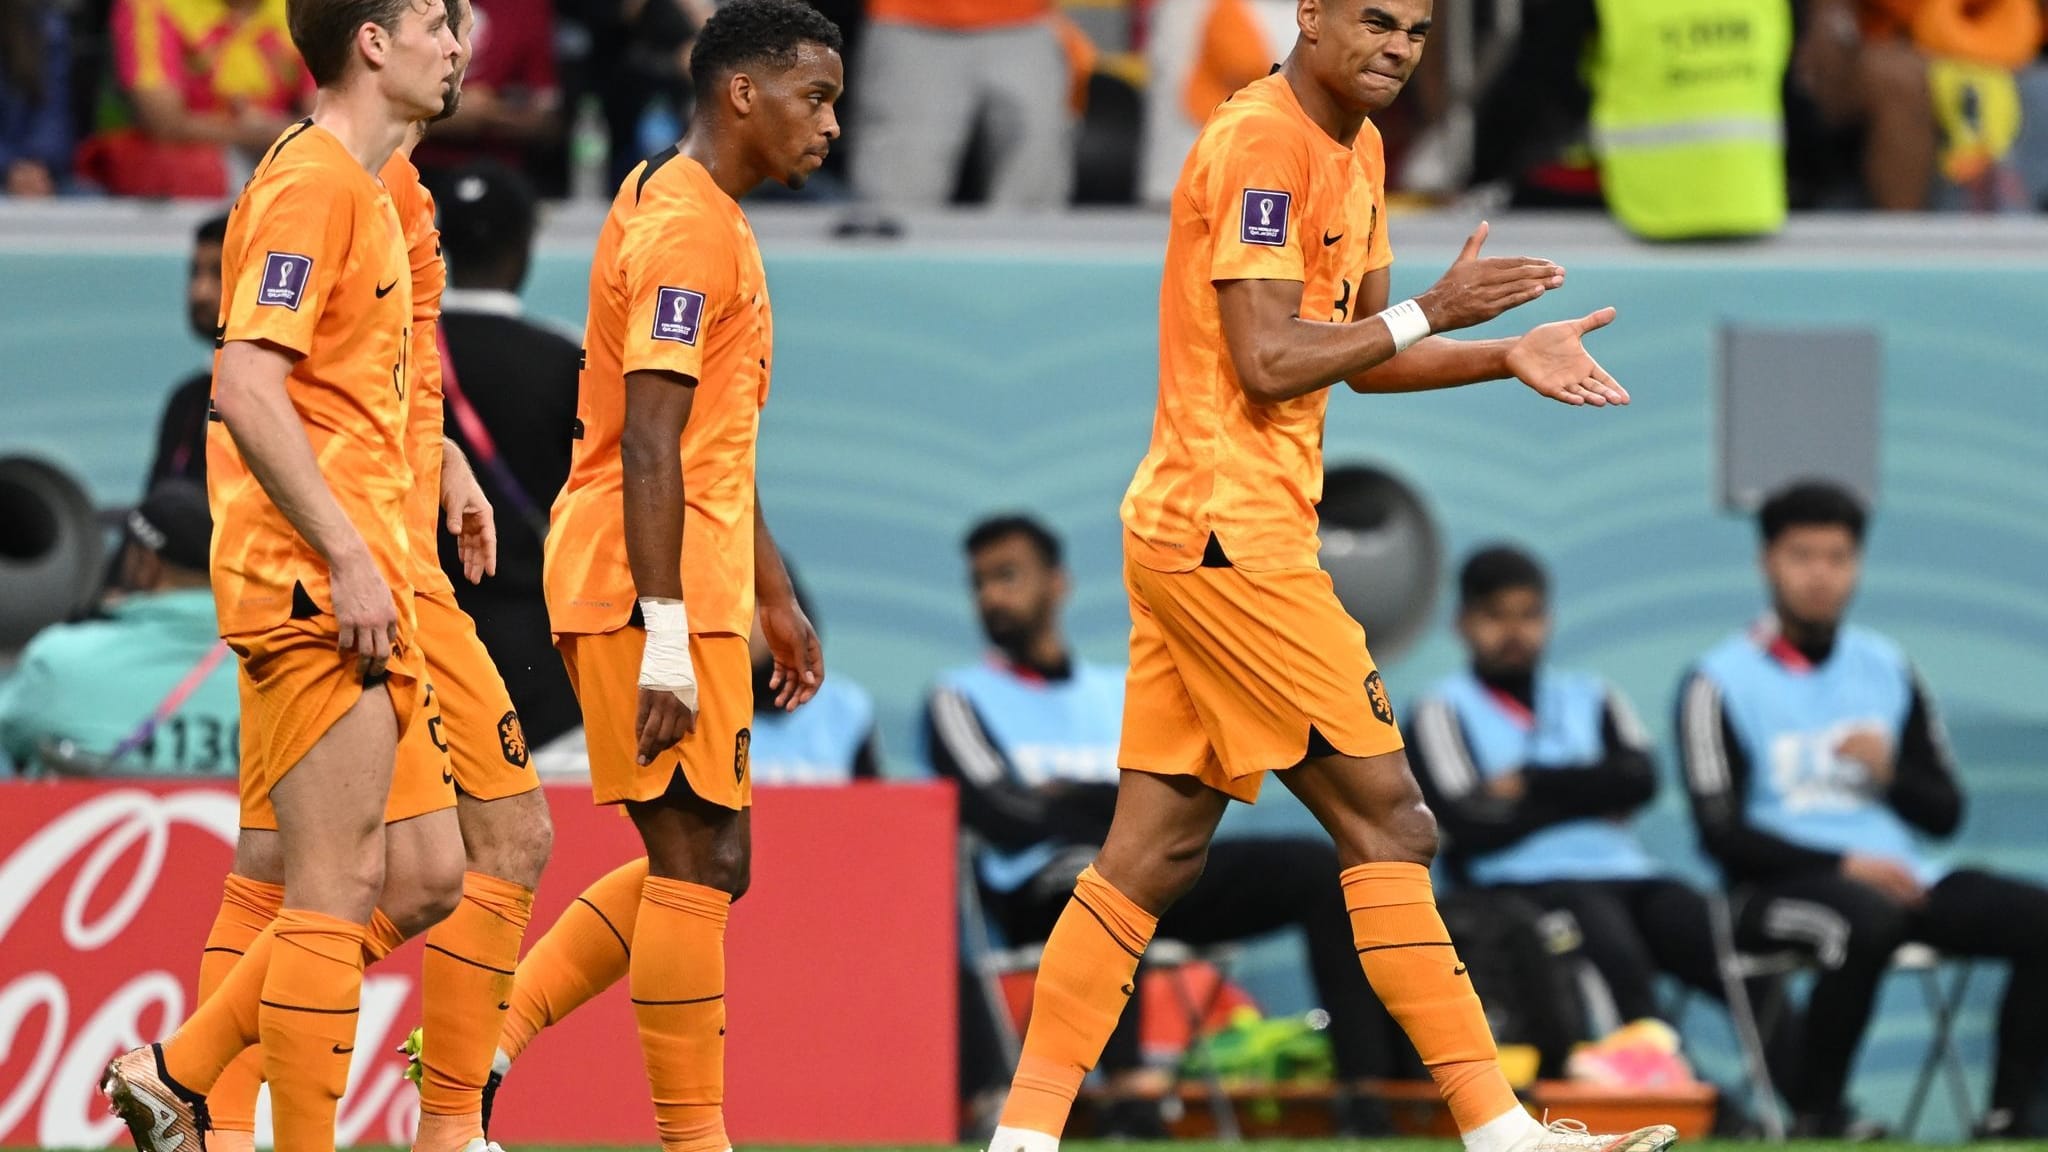 Fußball-WM | Nur Gakpo glänzt bei Oranje - van Gaal versteht Kritik nicht